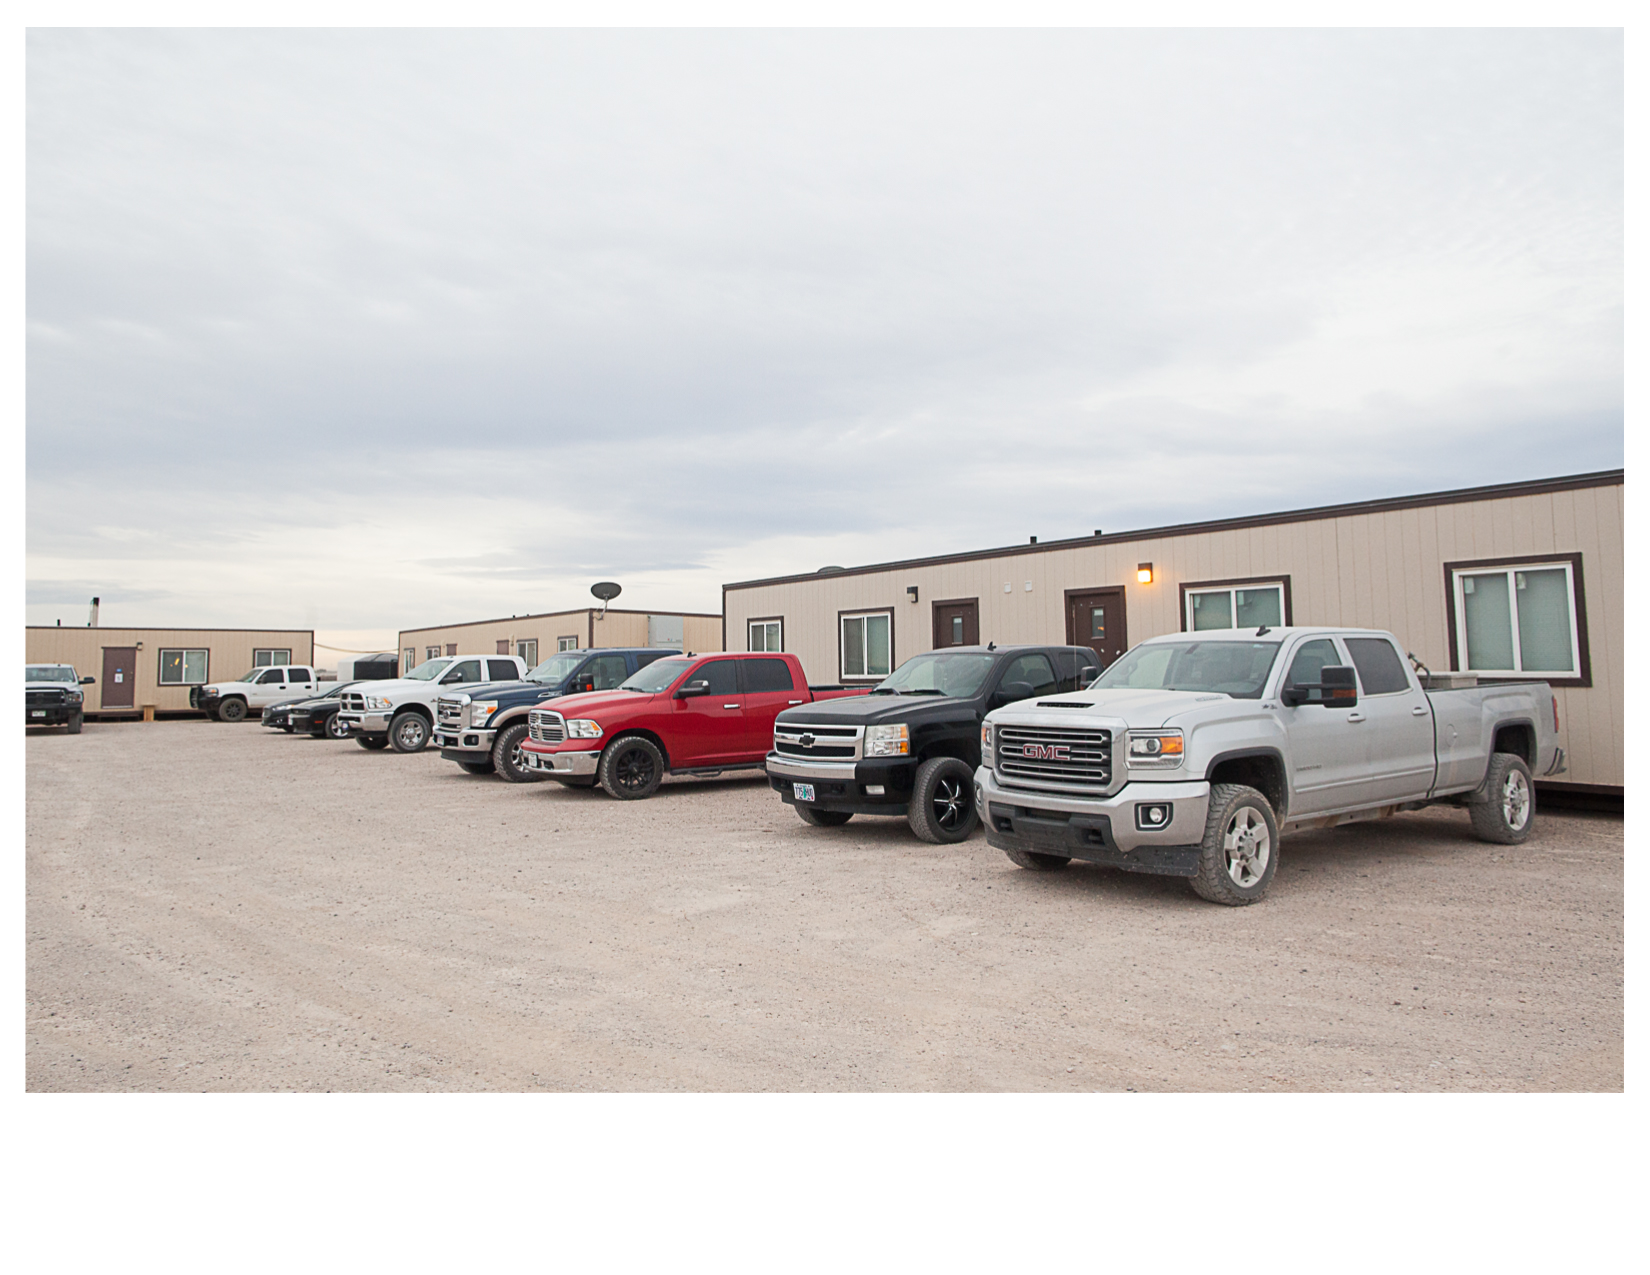 Pickup Trucks outside Oilfield Worker's Trailers, Pecos, TX